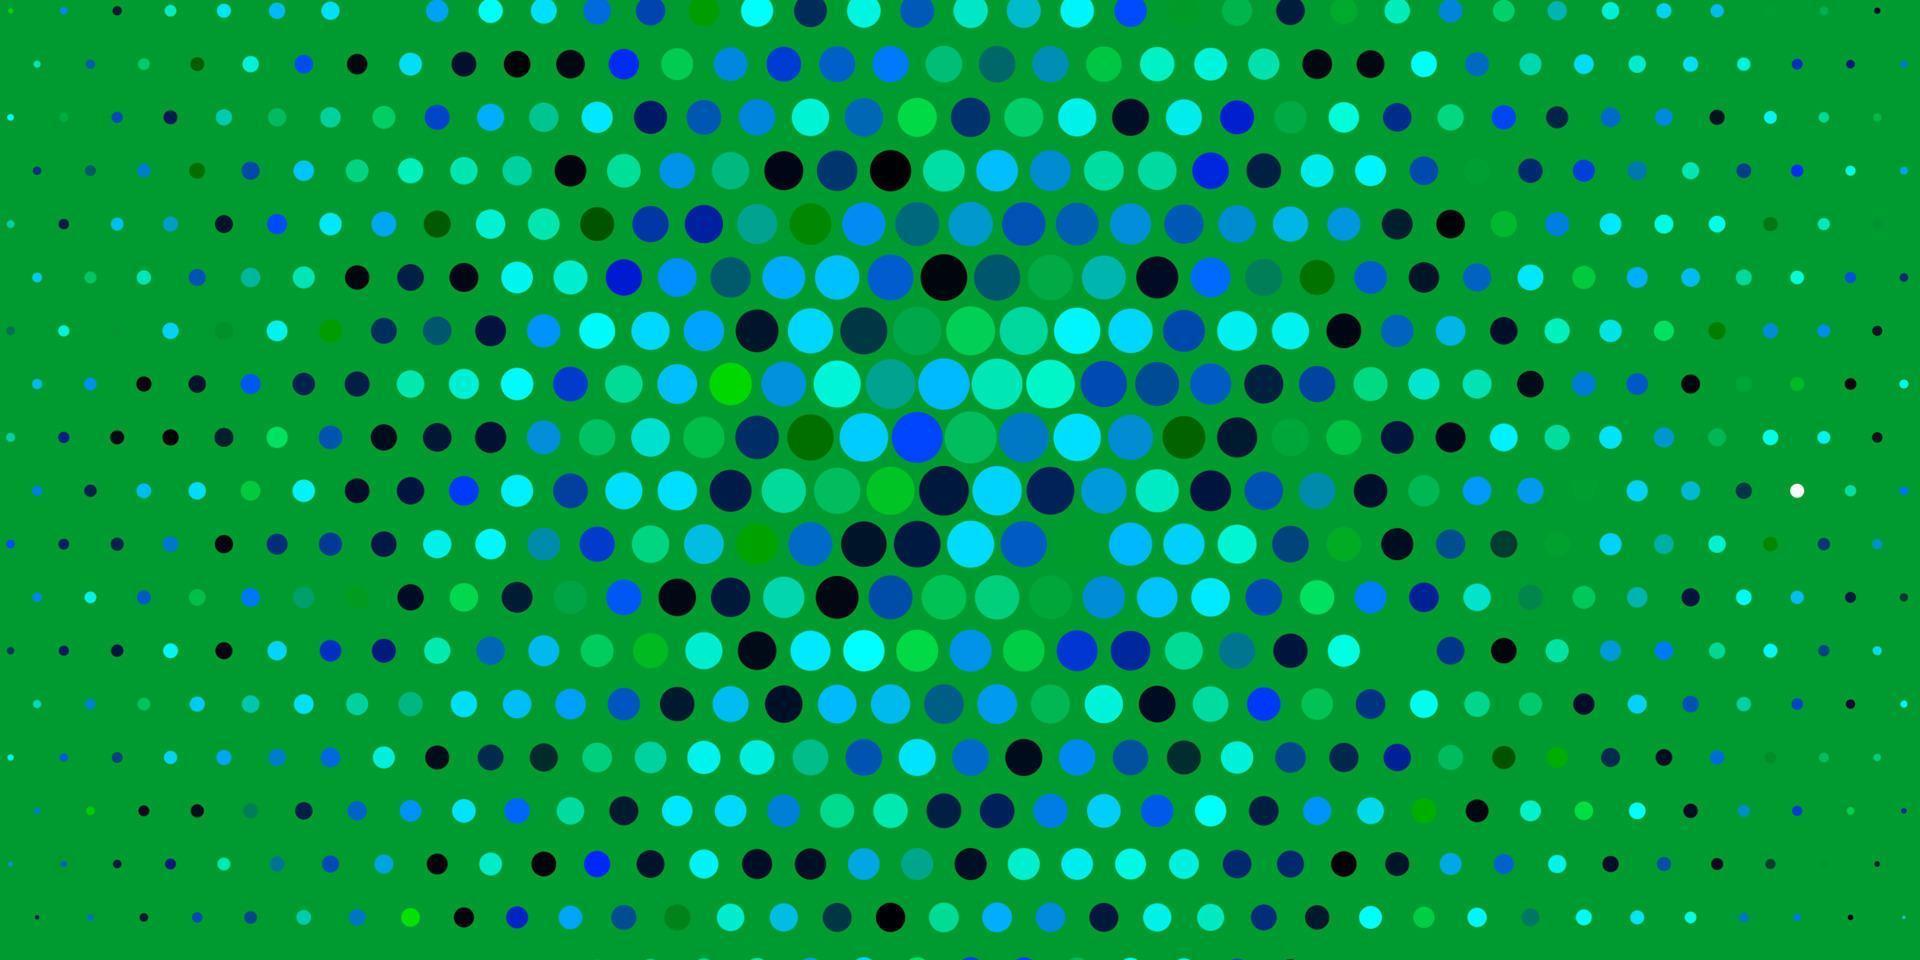 sfondo vettoriale azzurro, verde con punti.